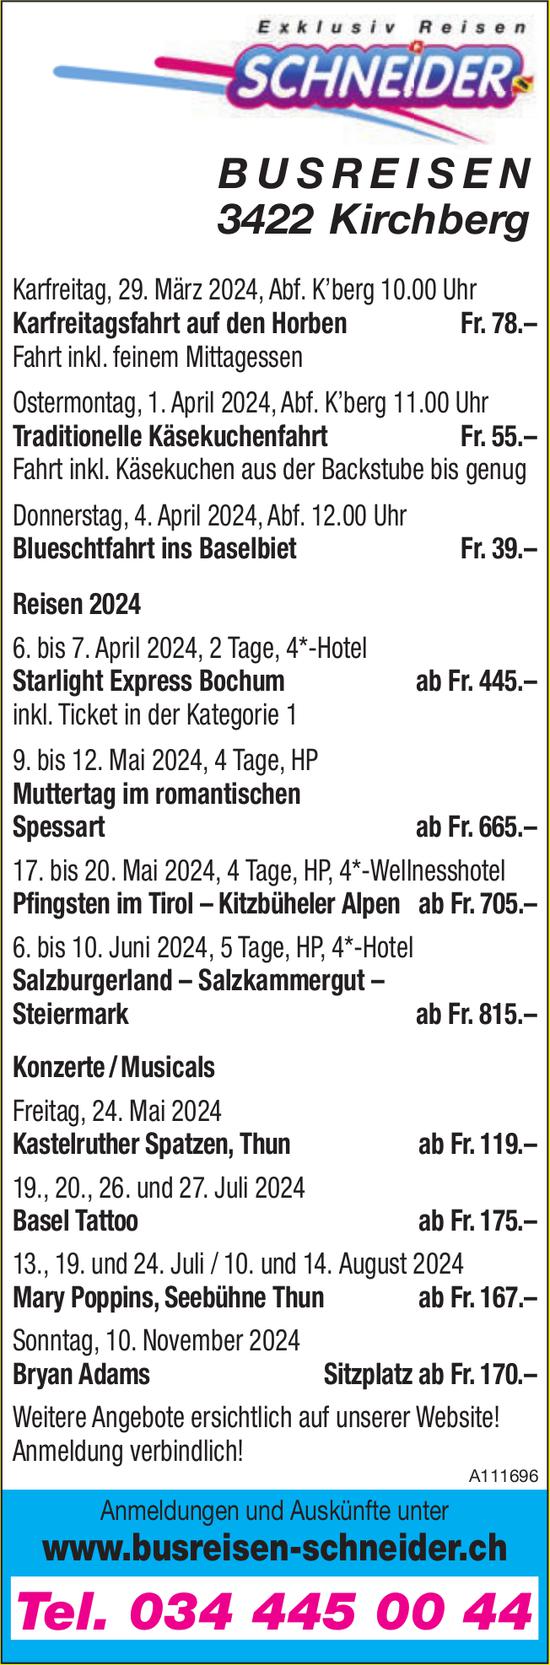 Programm & Events, Busreisen Schneider, Kirchberg